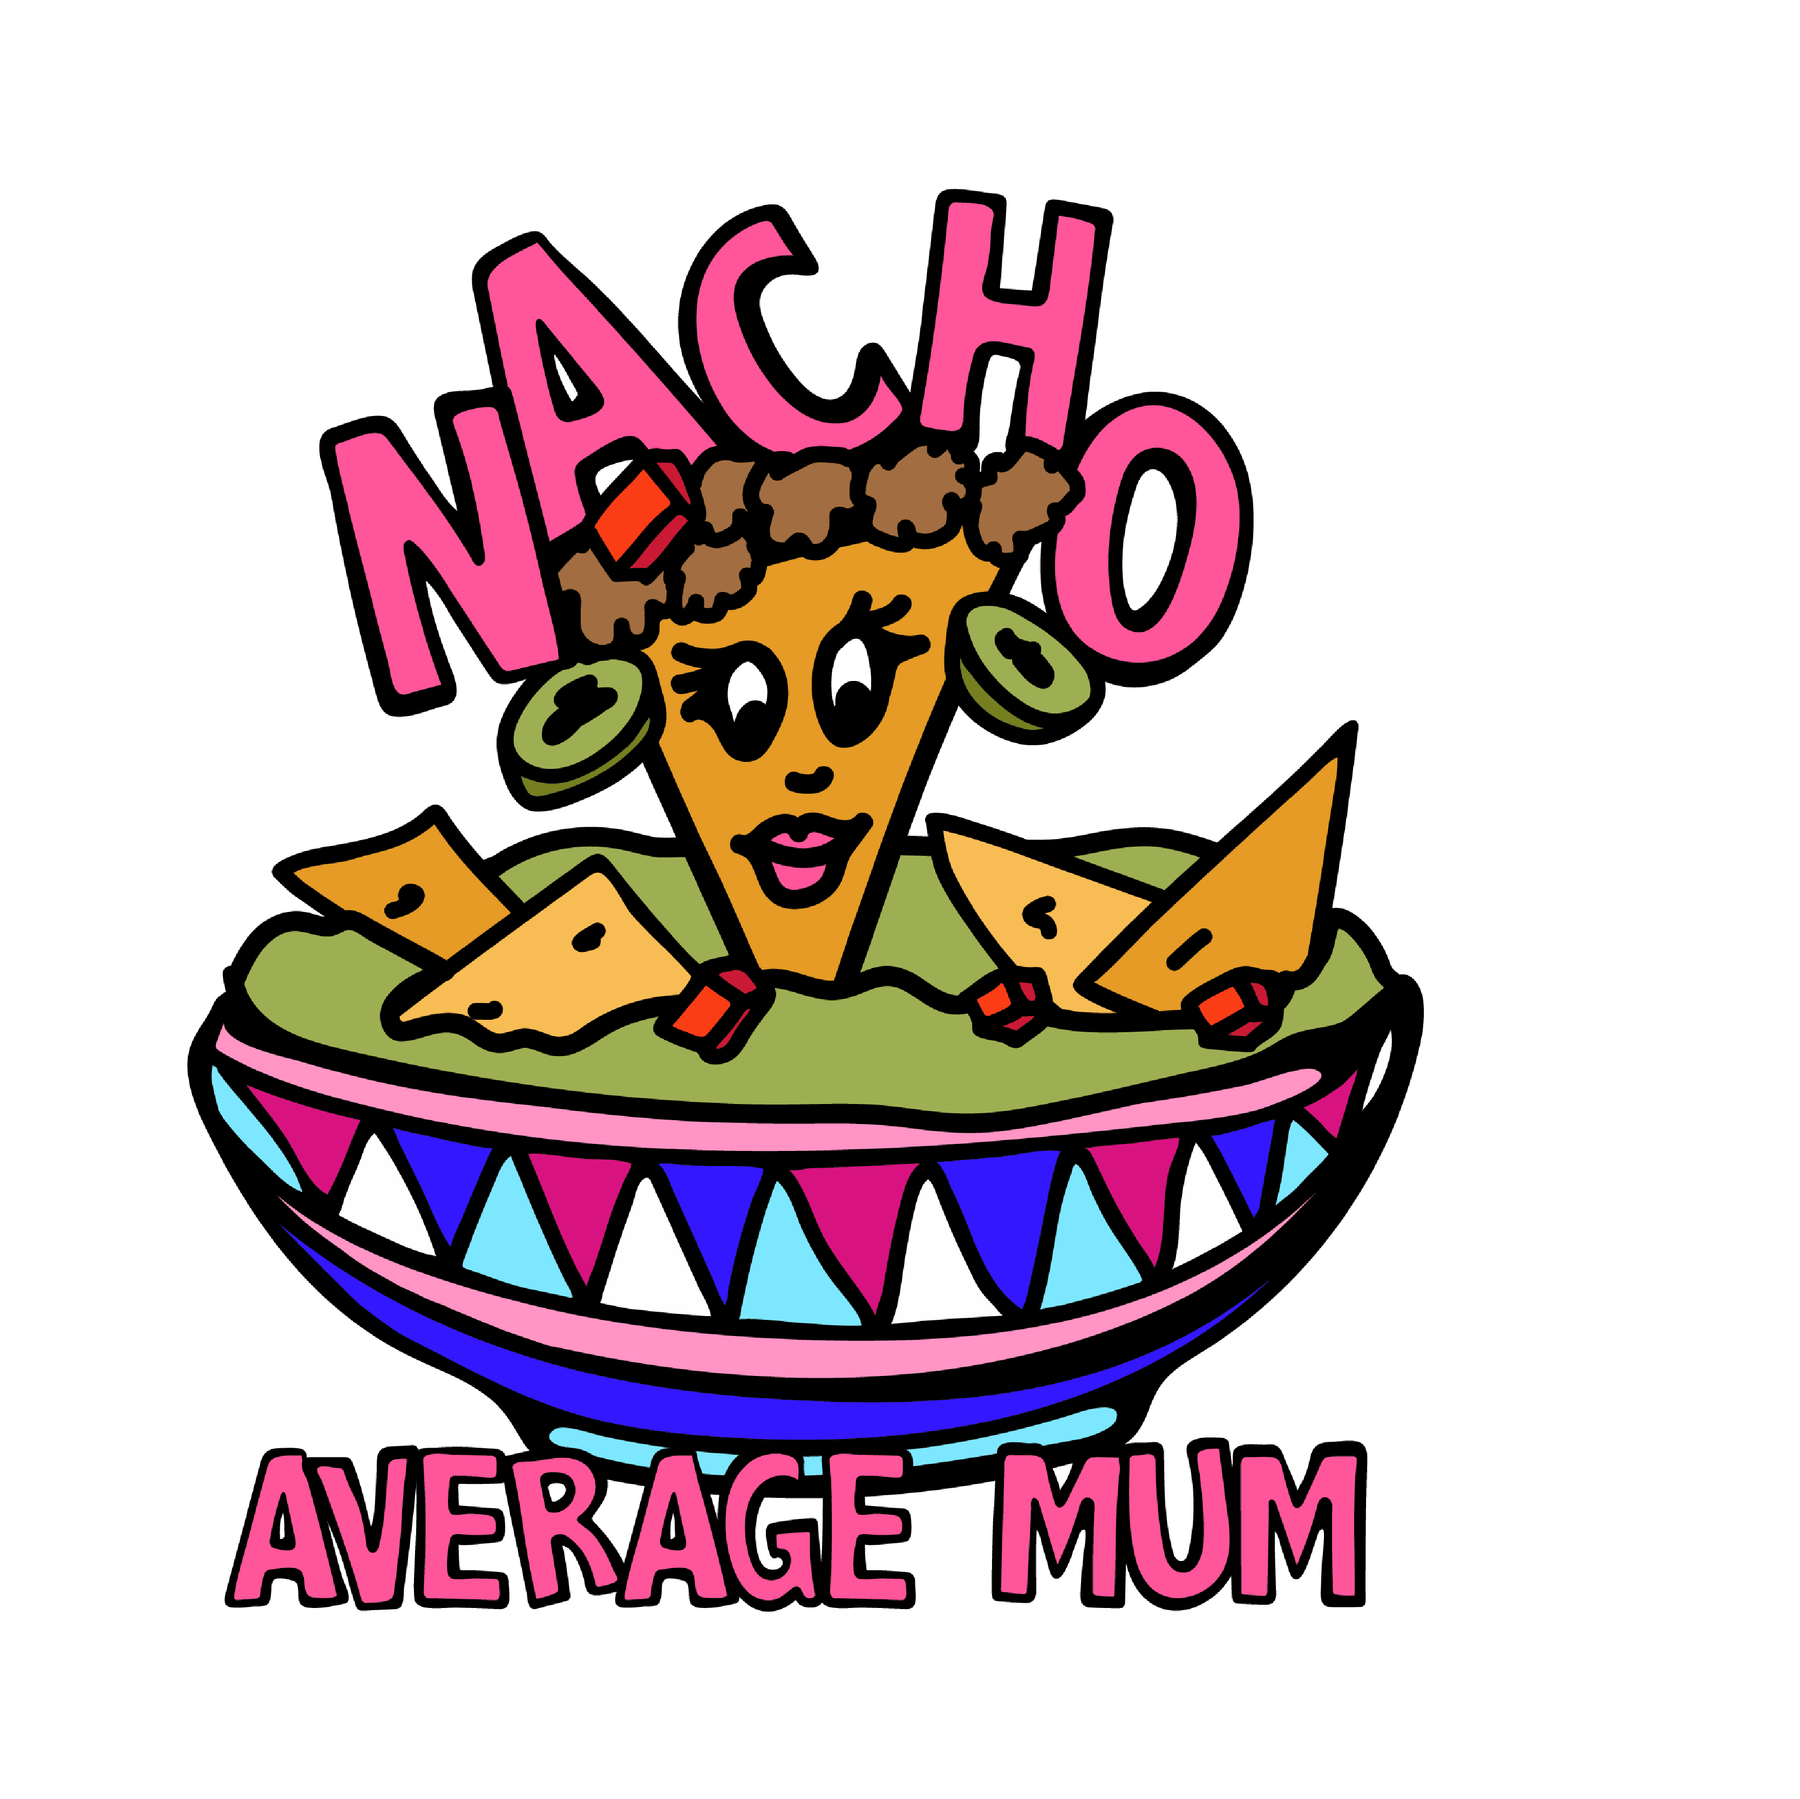 Nacho Average Mum 😉 – Women's T Shirt